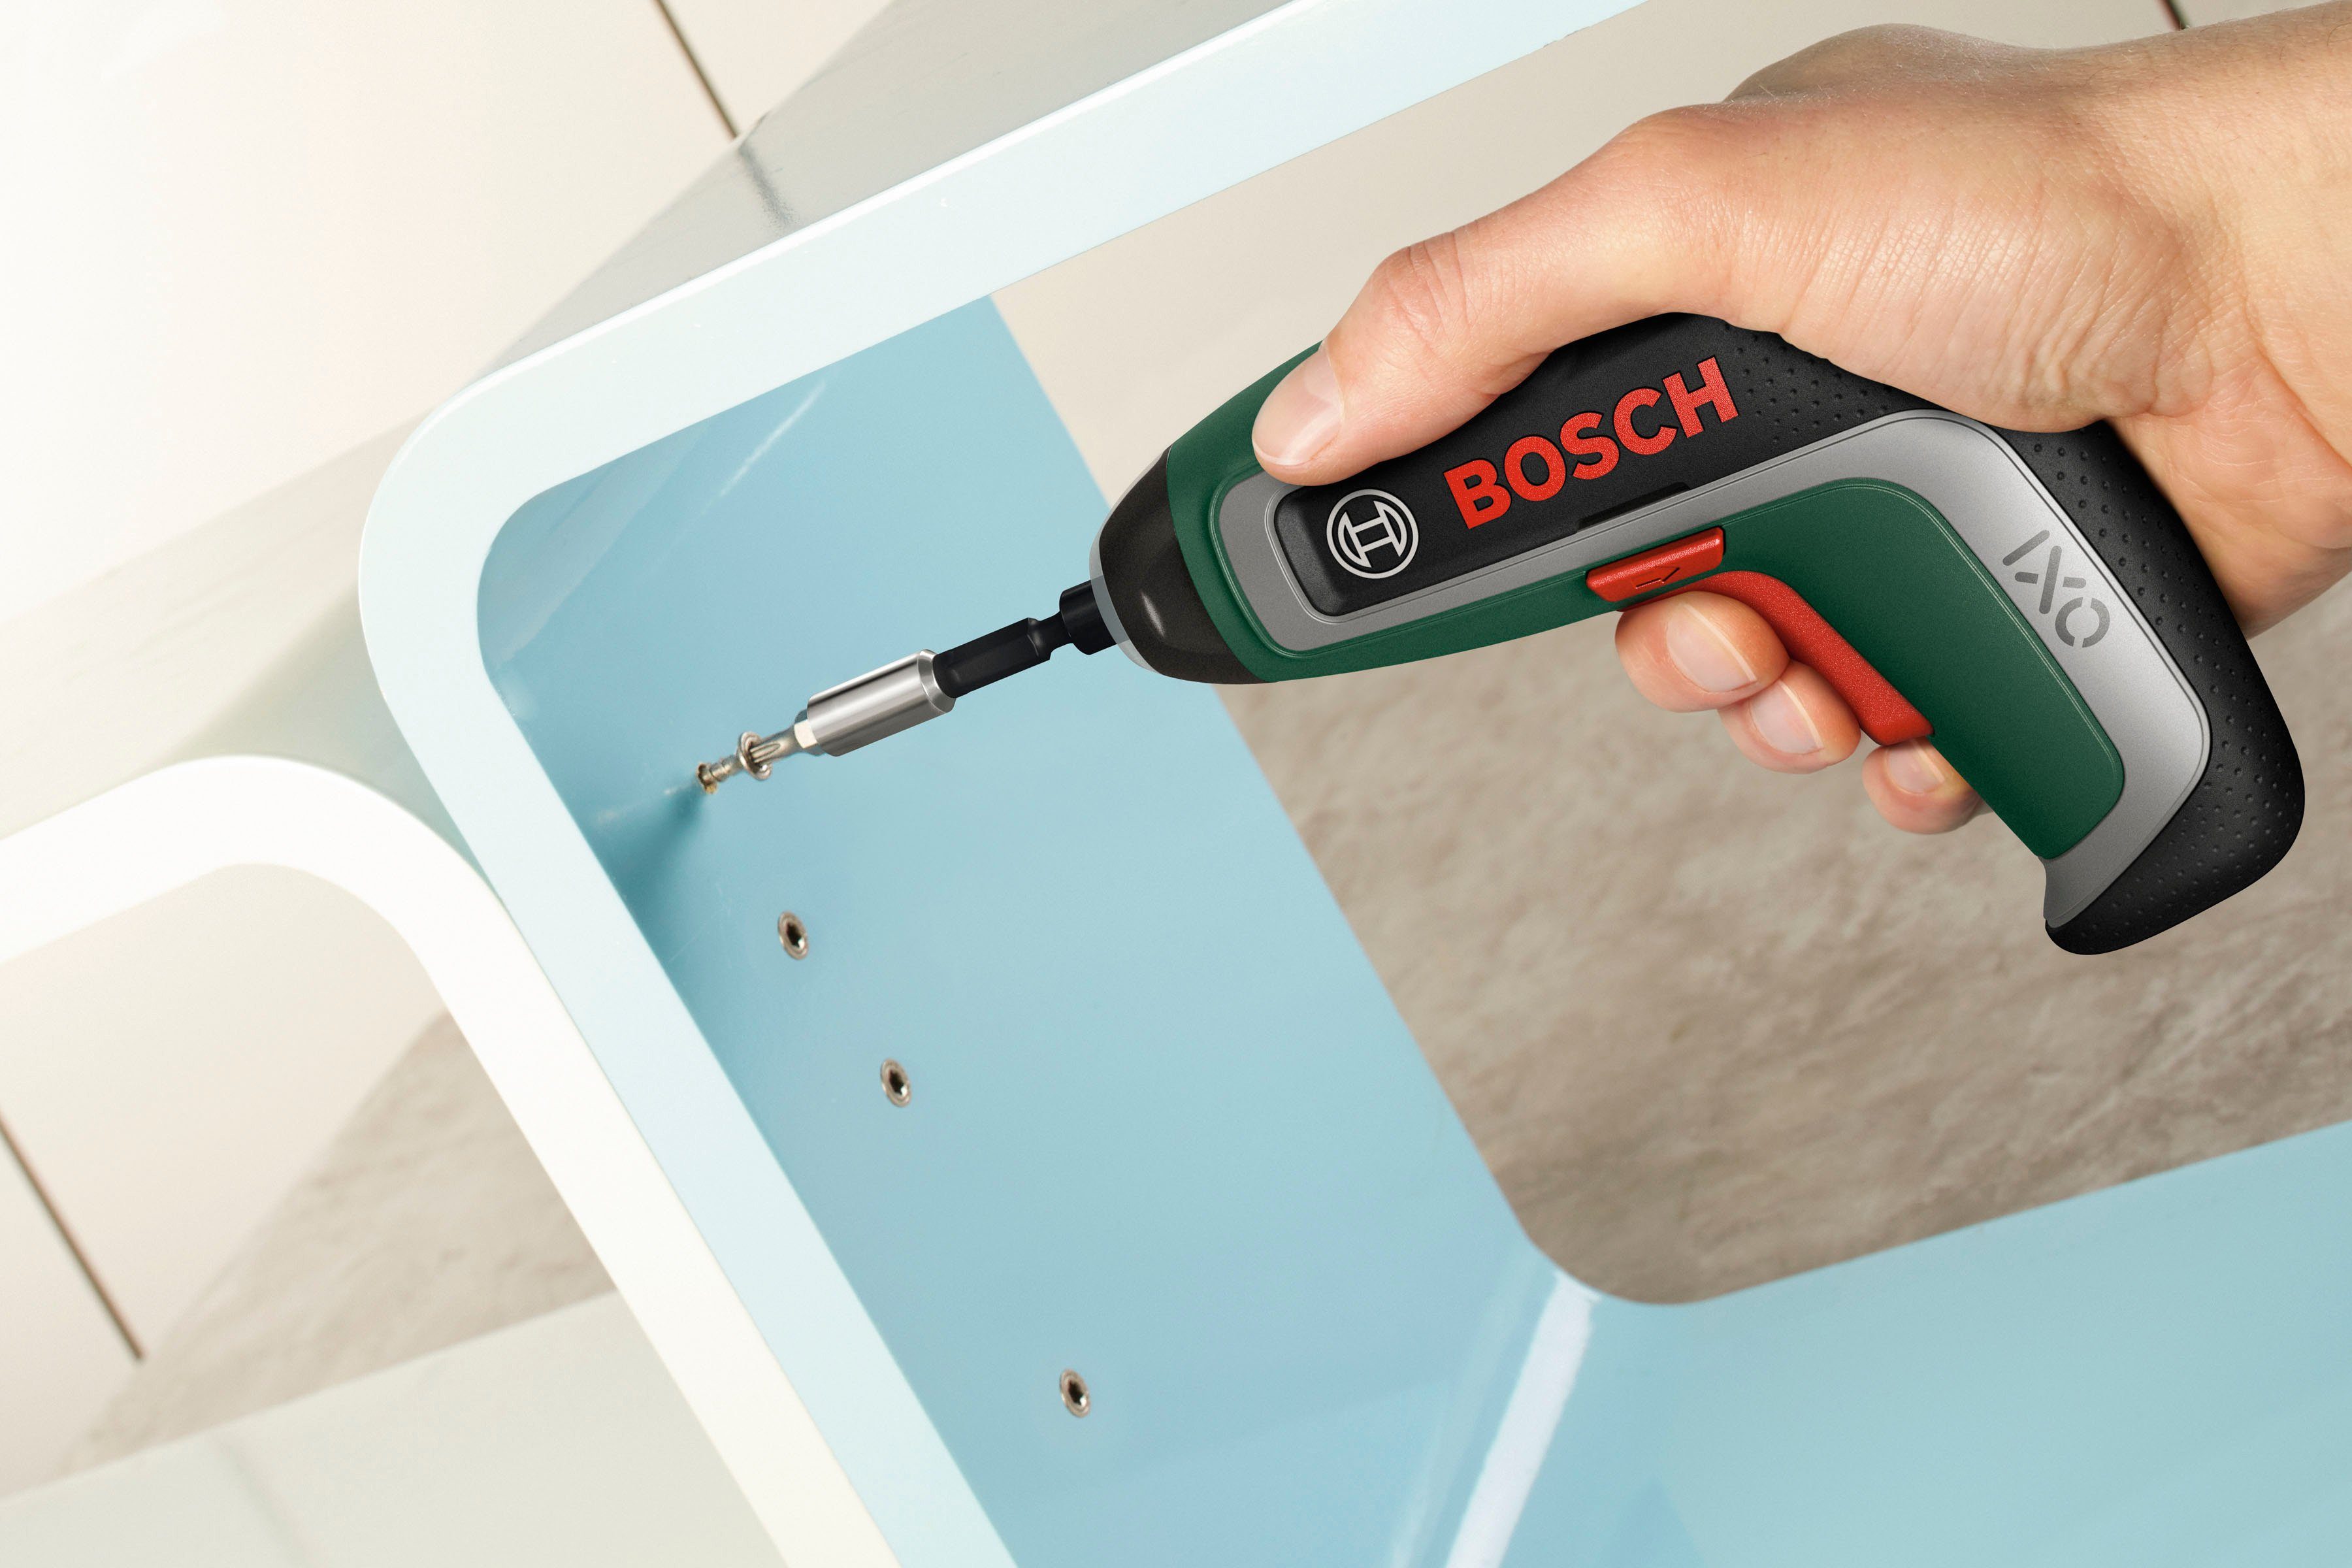 Bosch Home 5,5 10 und mit Bit-Halter IXO Akku-Schrauber Standard-Schrauberbits, Aufbewahrungsbox 7, Nm, Garden &